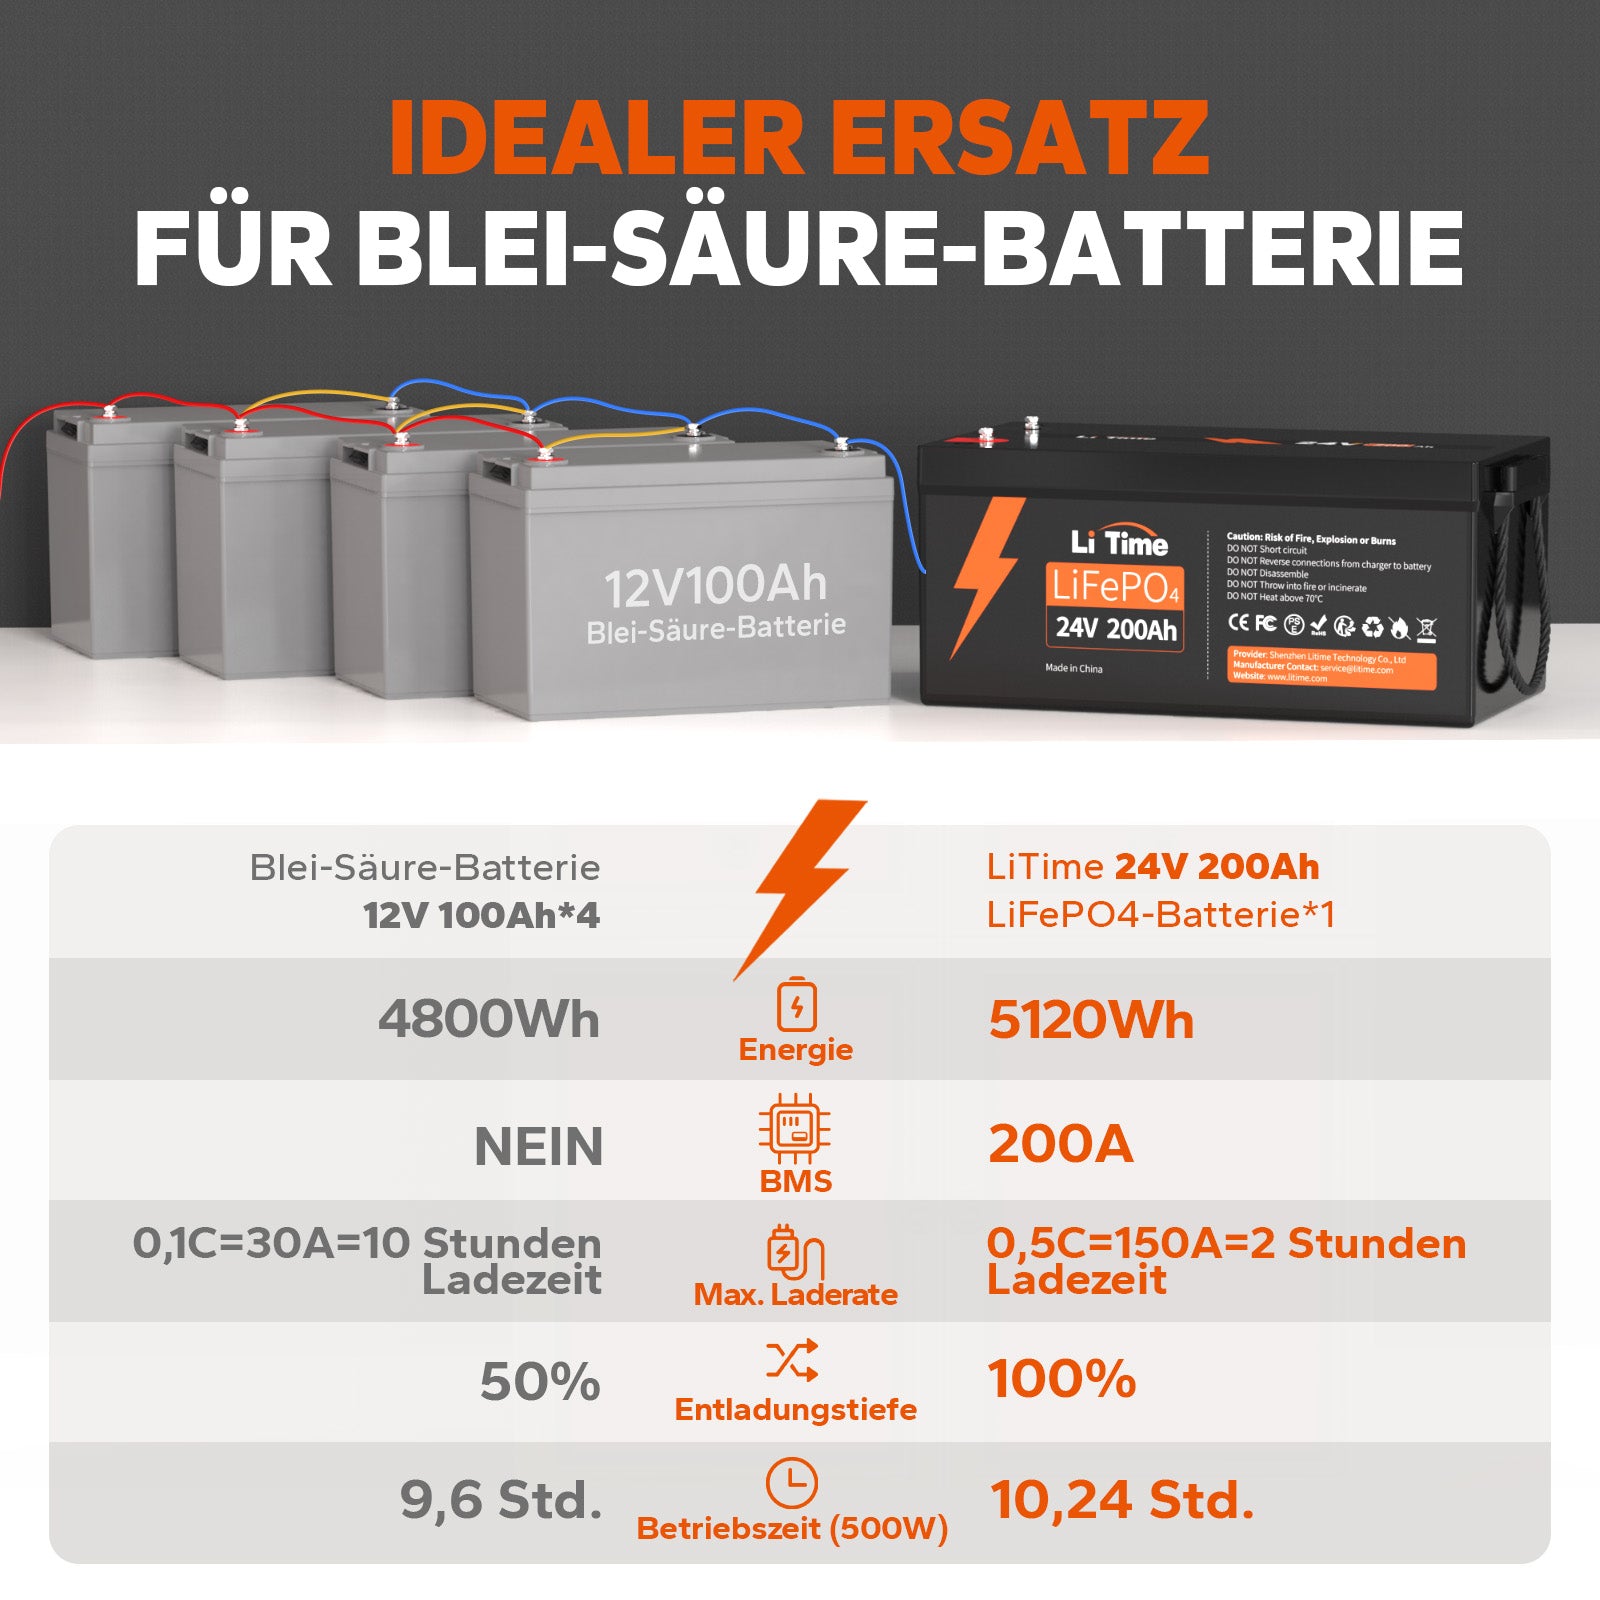  24V 200Ah Lithium-Batterie kann 4000~15000 Zyklen laufen, was mehr als 10 Mal zu Blei-Säure mit 200~500 Zyklen ist. 24V LiFePO4 Batterie kann 100% SOC&amp;DOD realisieren und hat 10 Jahre Lebensdauer